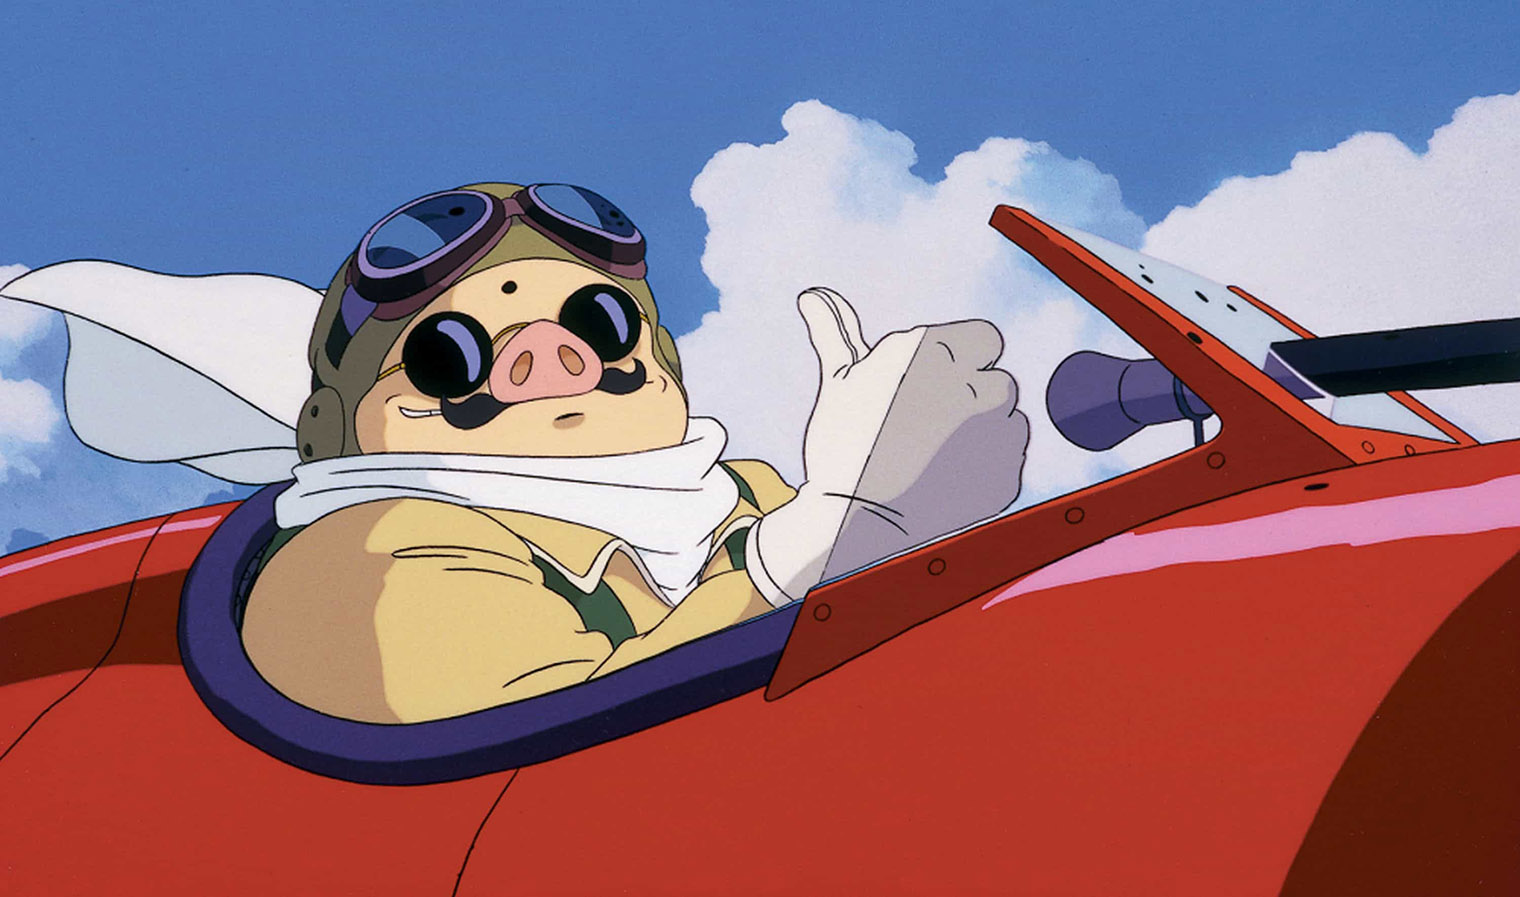 Главный герой называет себя Алым свином по аналогии с Красным бароном — легендарным летчиком Первой мировой войны. Кадр: Studio Ghibli